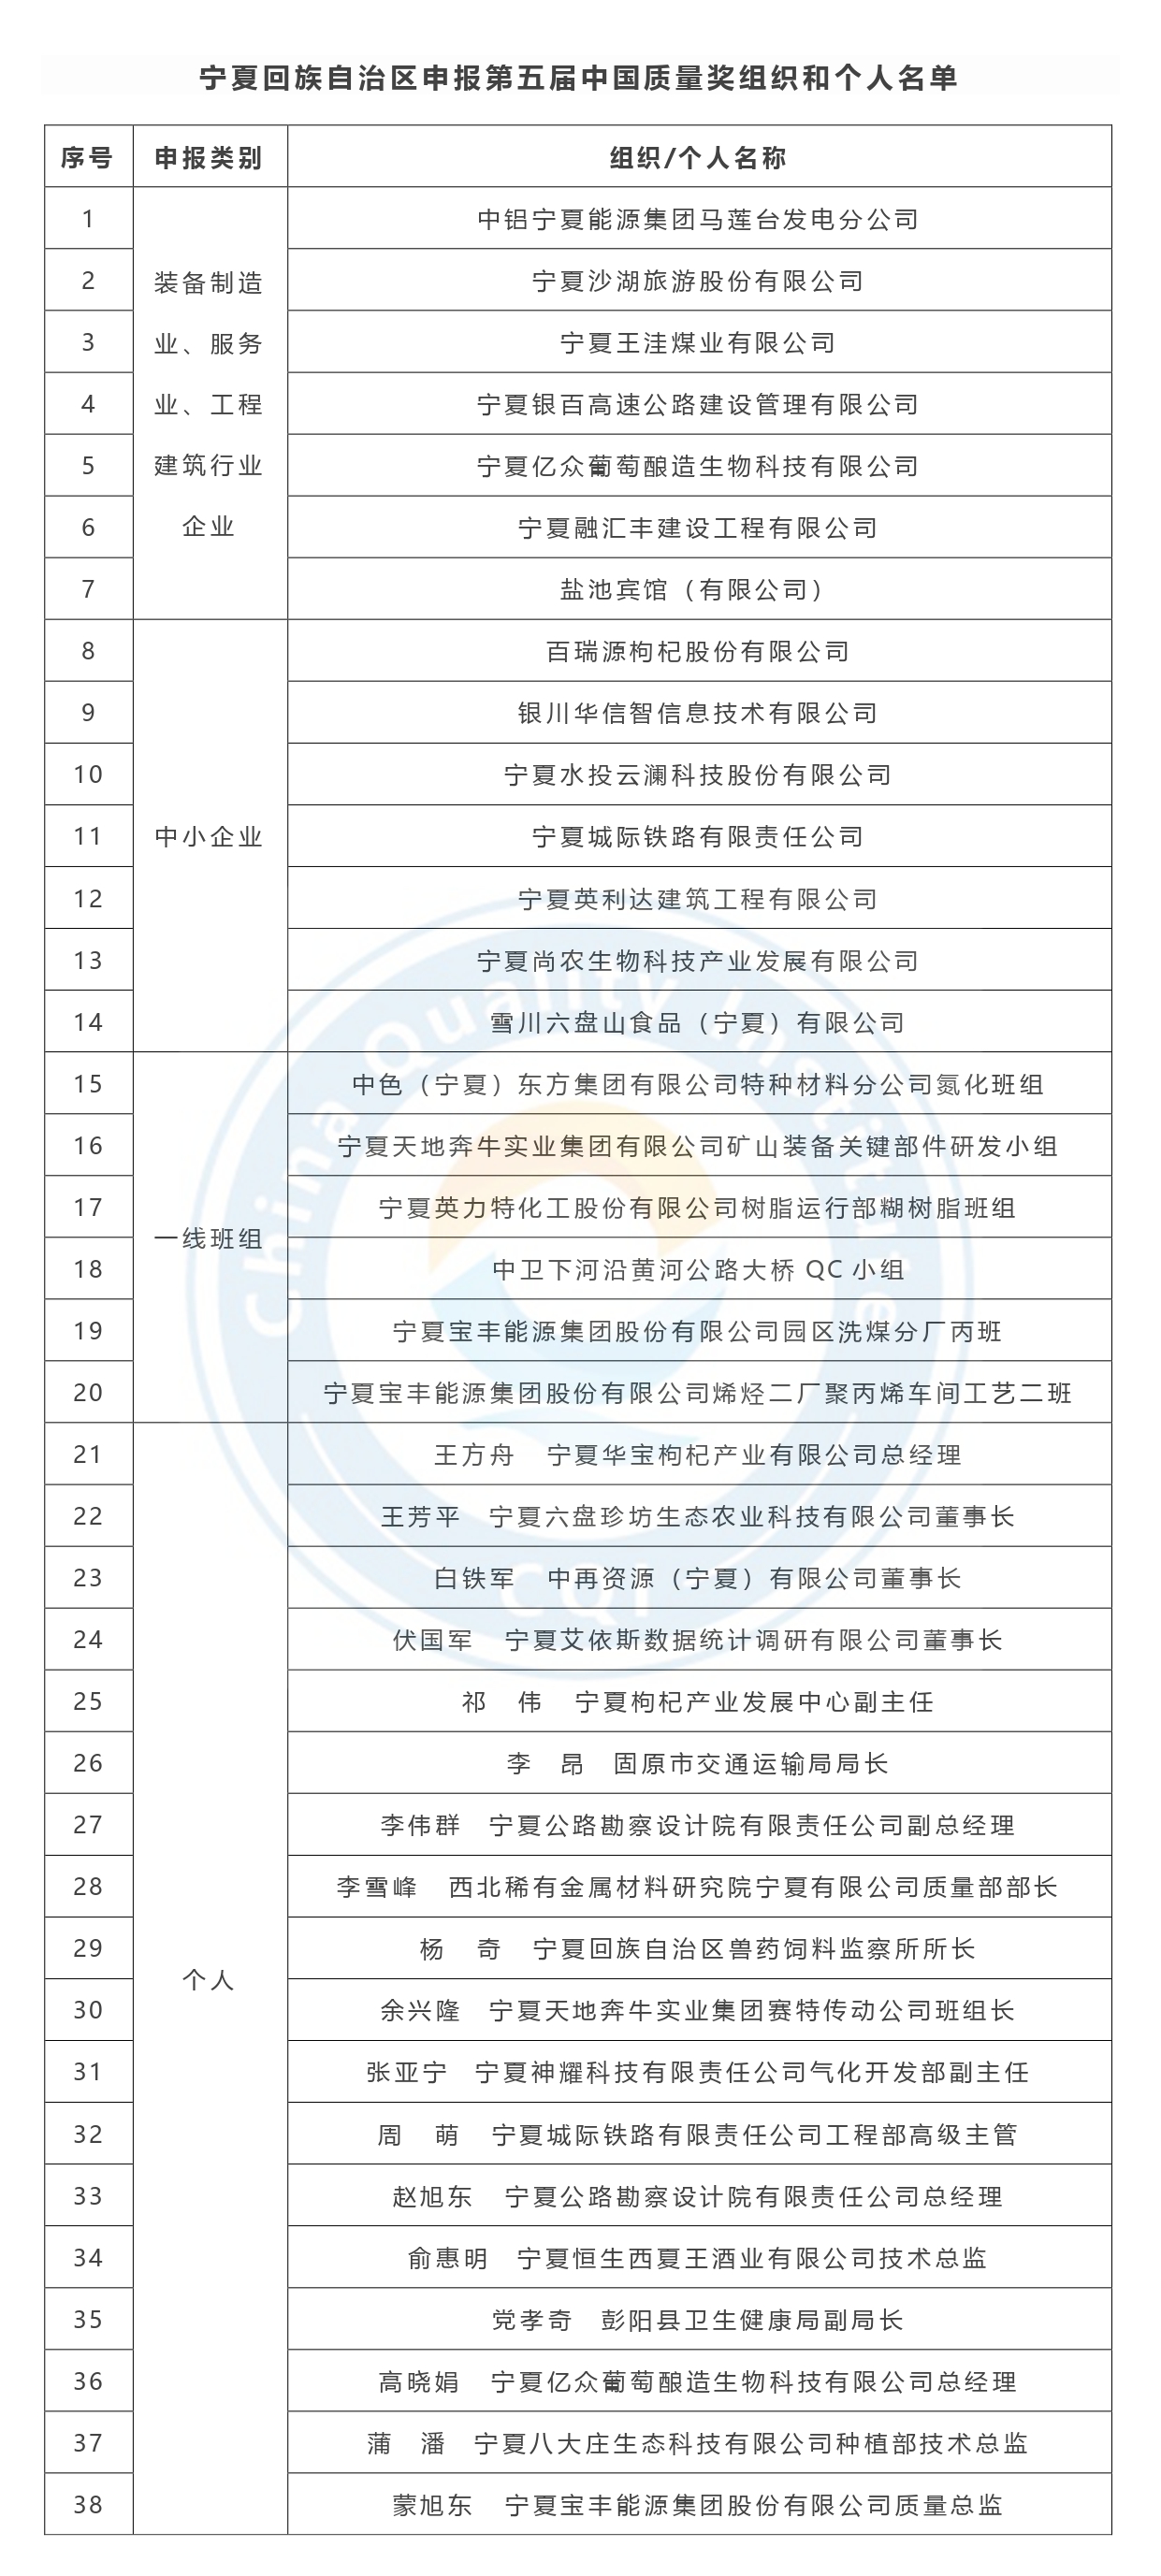 第五届中国质量奖申报名单公示-宁夏.jpg